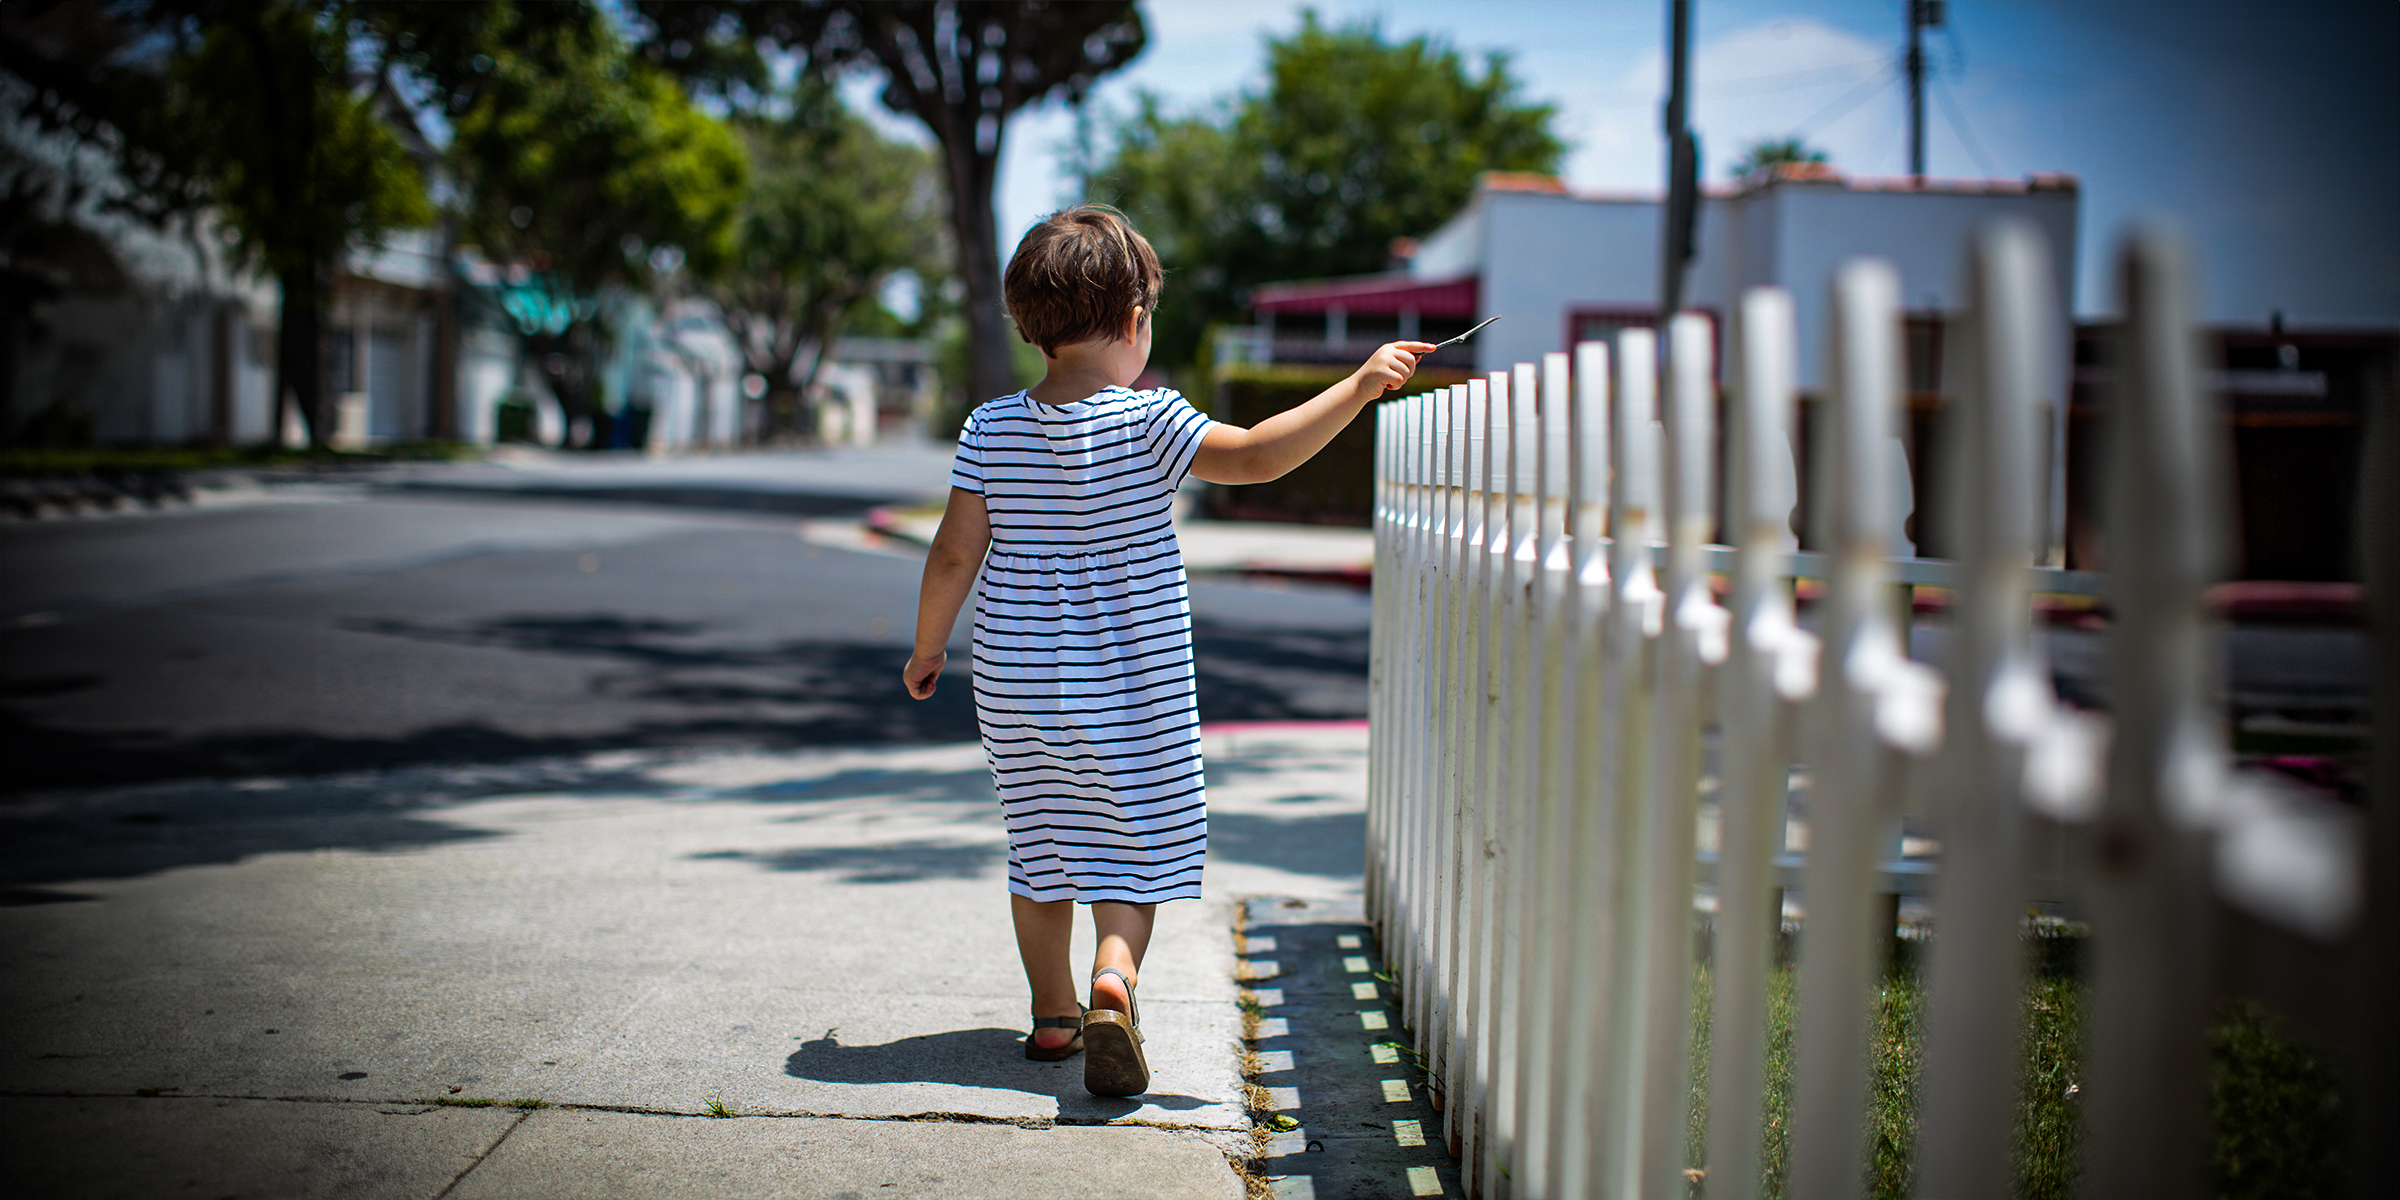 A girl walking near a fence | Source: Shutterstock